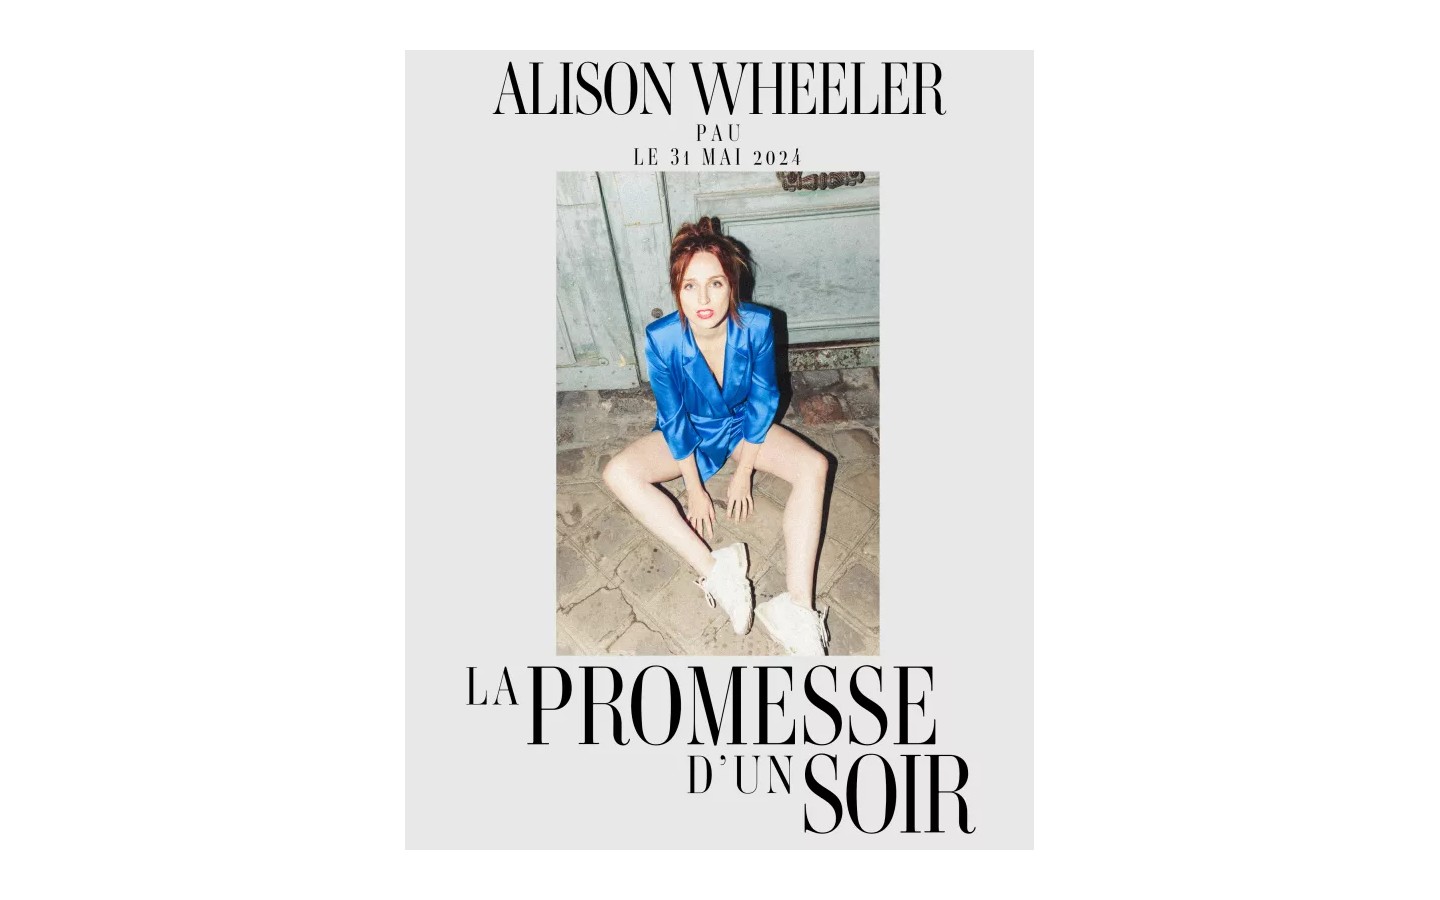 Alison Wheeler "La promesse d'un soir"